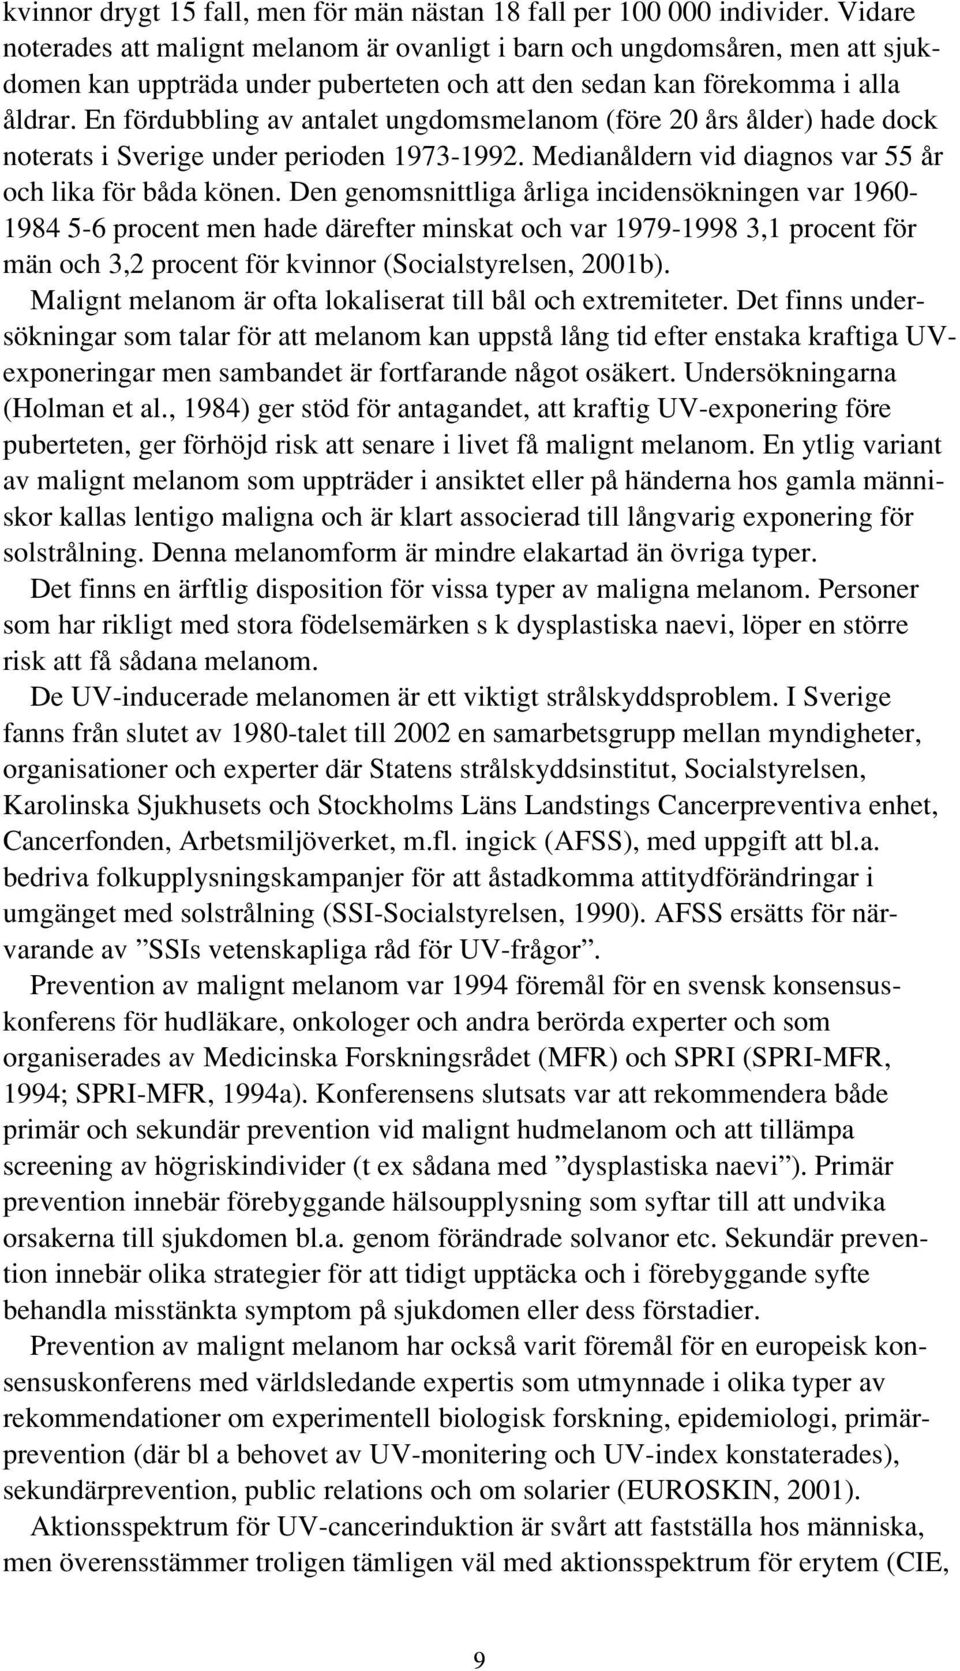 En fördubbling av antalet ungdomsmelanom (före 20 års ålder) hade dock noterats i Sverige under perioden 1973-1992. Medianåldern vid diagnos var 55 år och lika för båda könen.